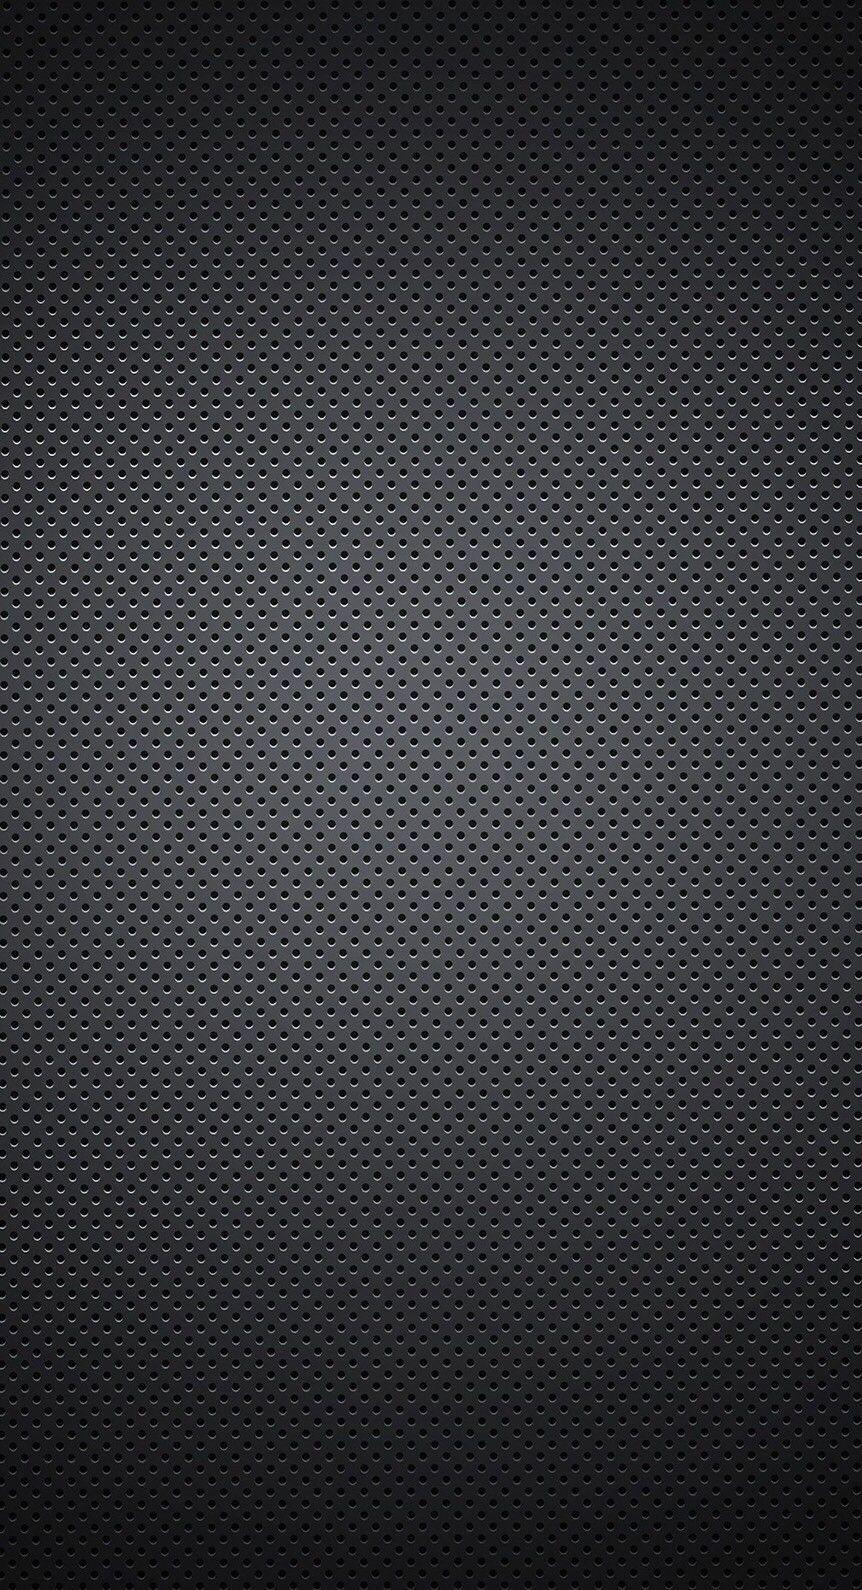 100+] Carbon Fiber Wallpapers